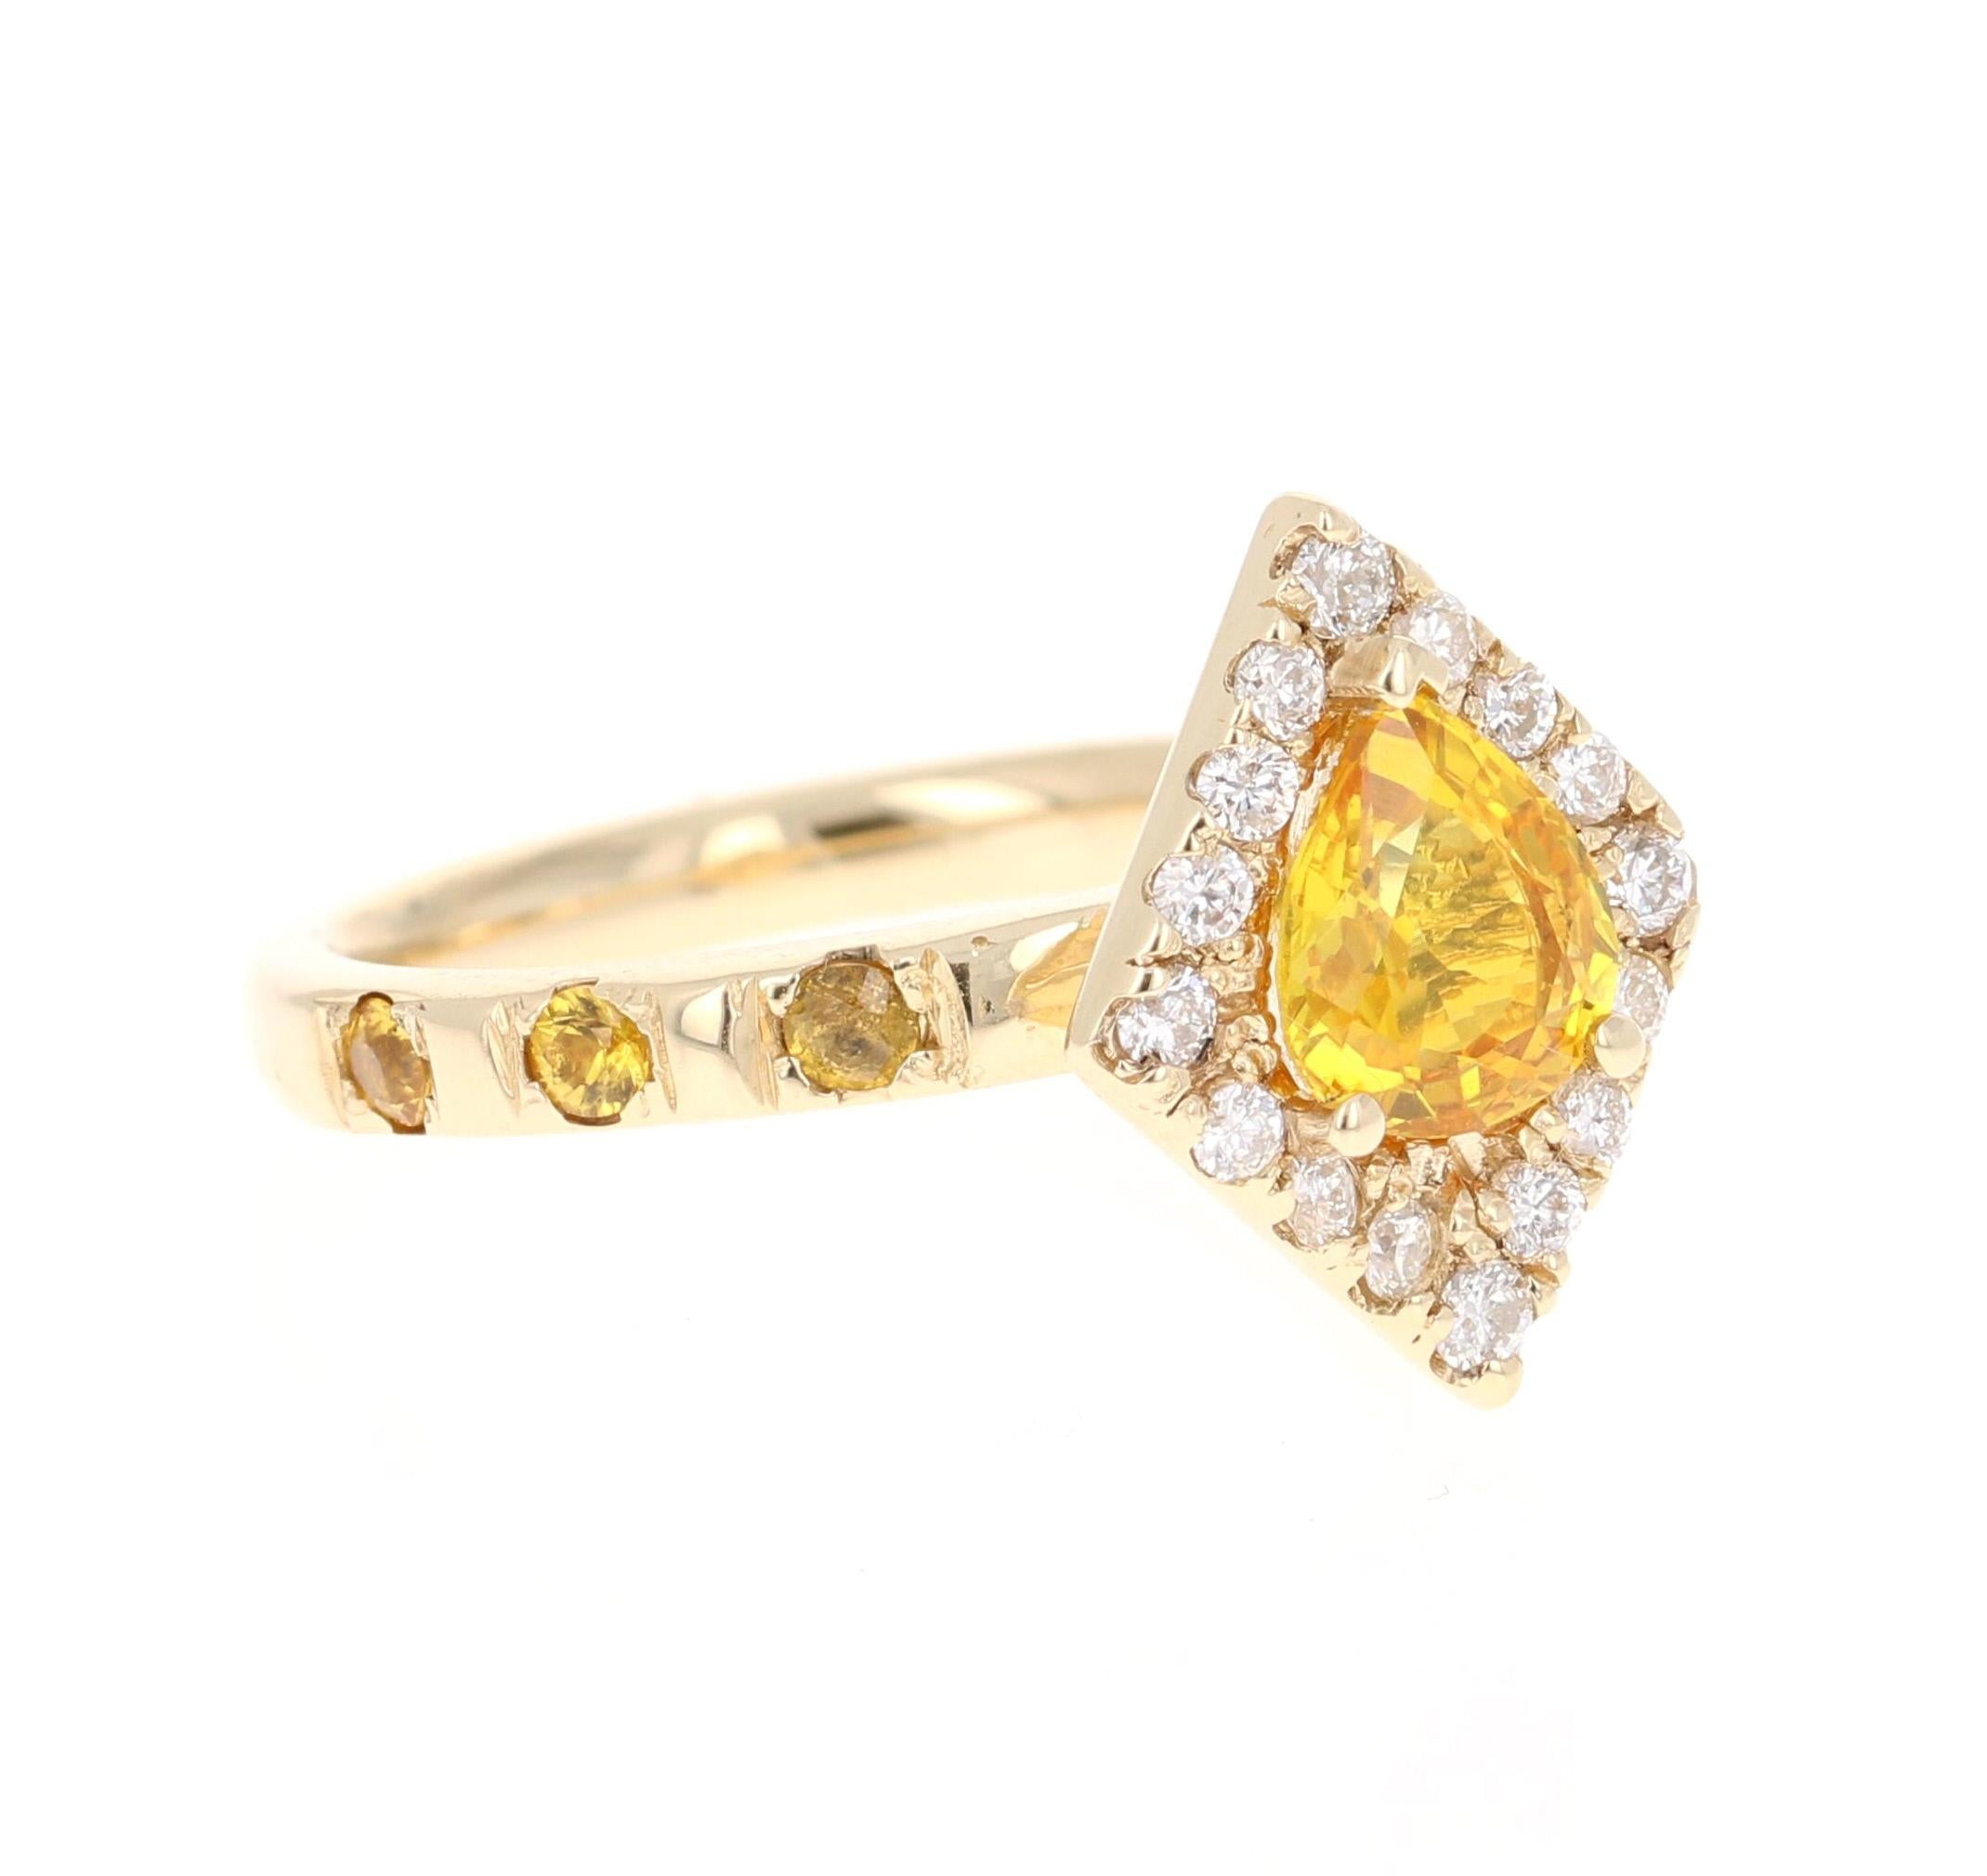 Dieser schöne Ring hat einen gelben Saphir im Birnenschliff, der 1,34 Karat wiegt und hat auch 16 Diamanten im Rundschliff, die 0,32 Karat wiegen, ist es weiter mit 6 gelben Saphiren auf dem Schaft mit einem Gewicht von 0,35 Karat verschönert. Das